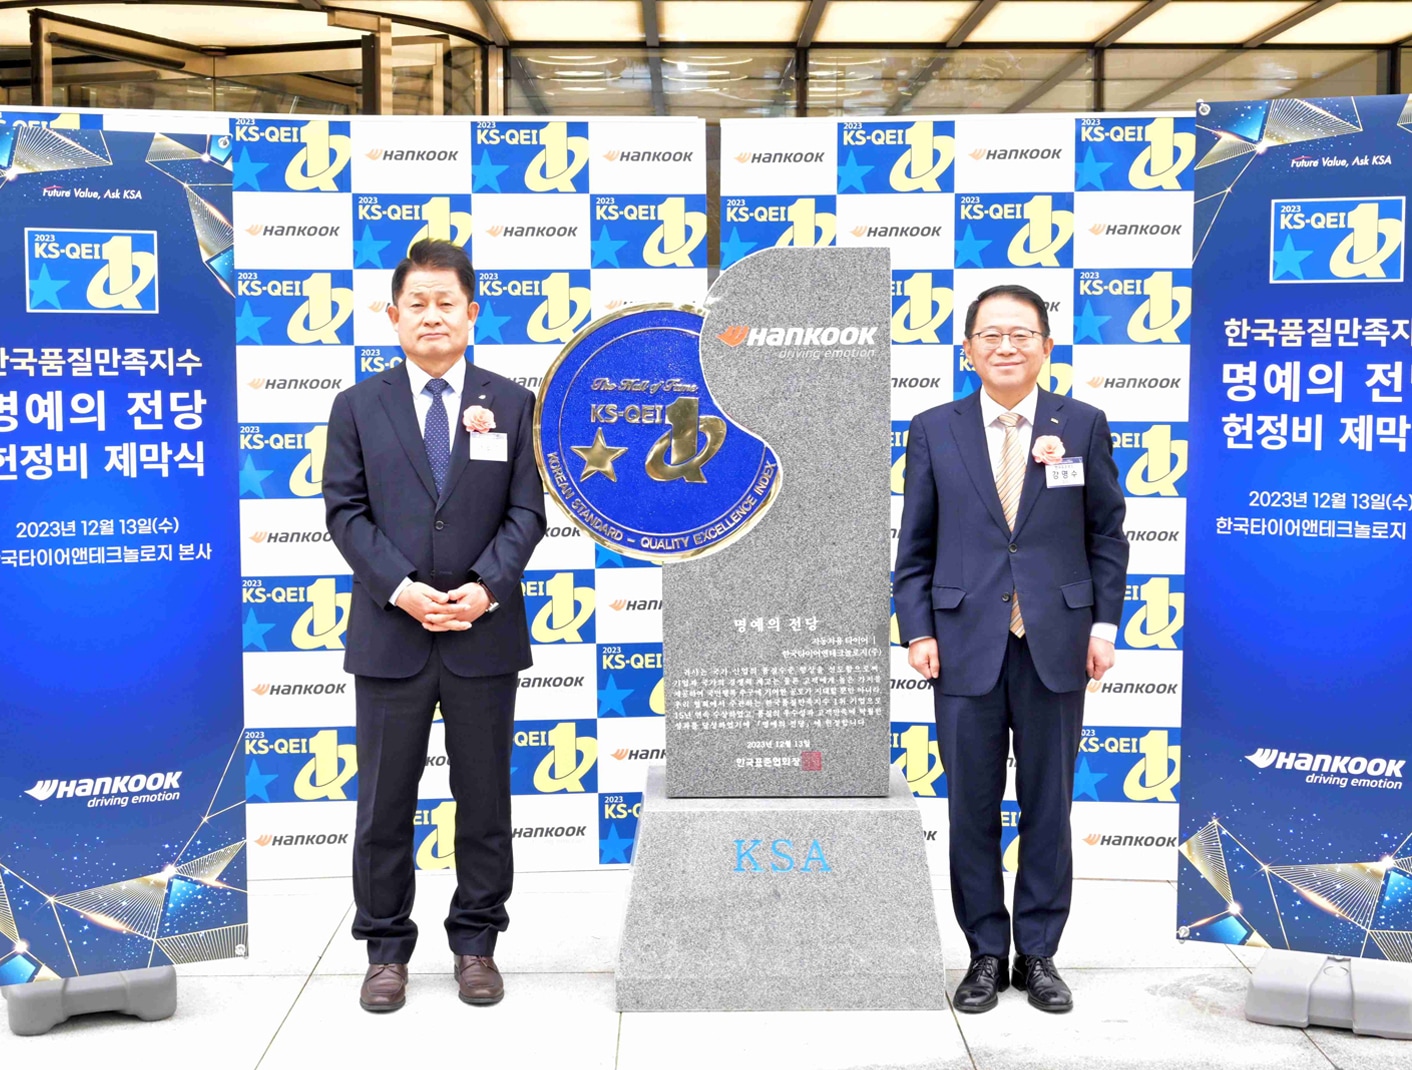 한국타이어, 국내 타이어 업계 최초 ‘한국품질만족지수 명예의 전당’ 헌액